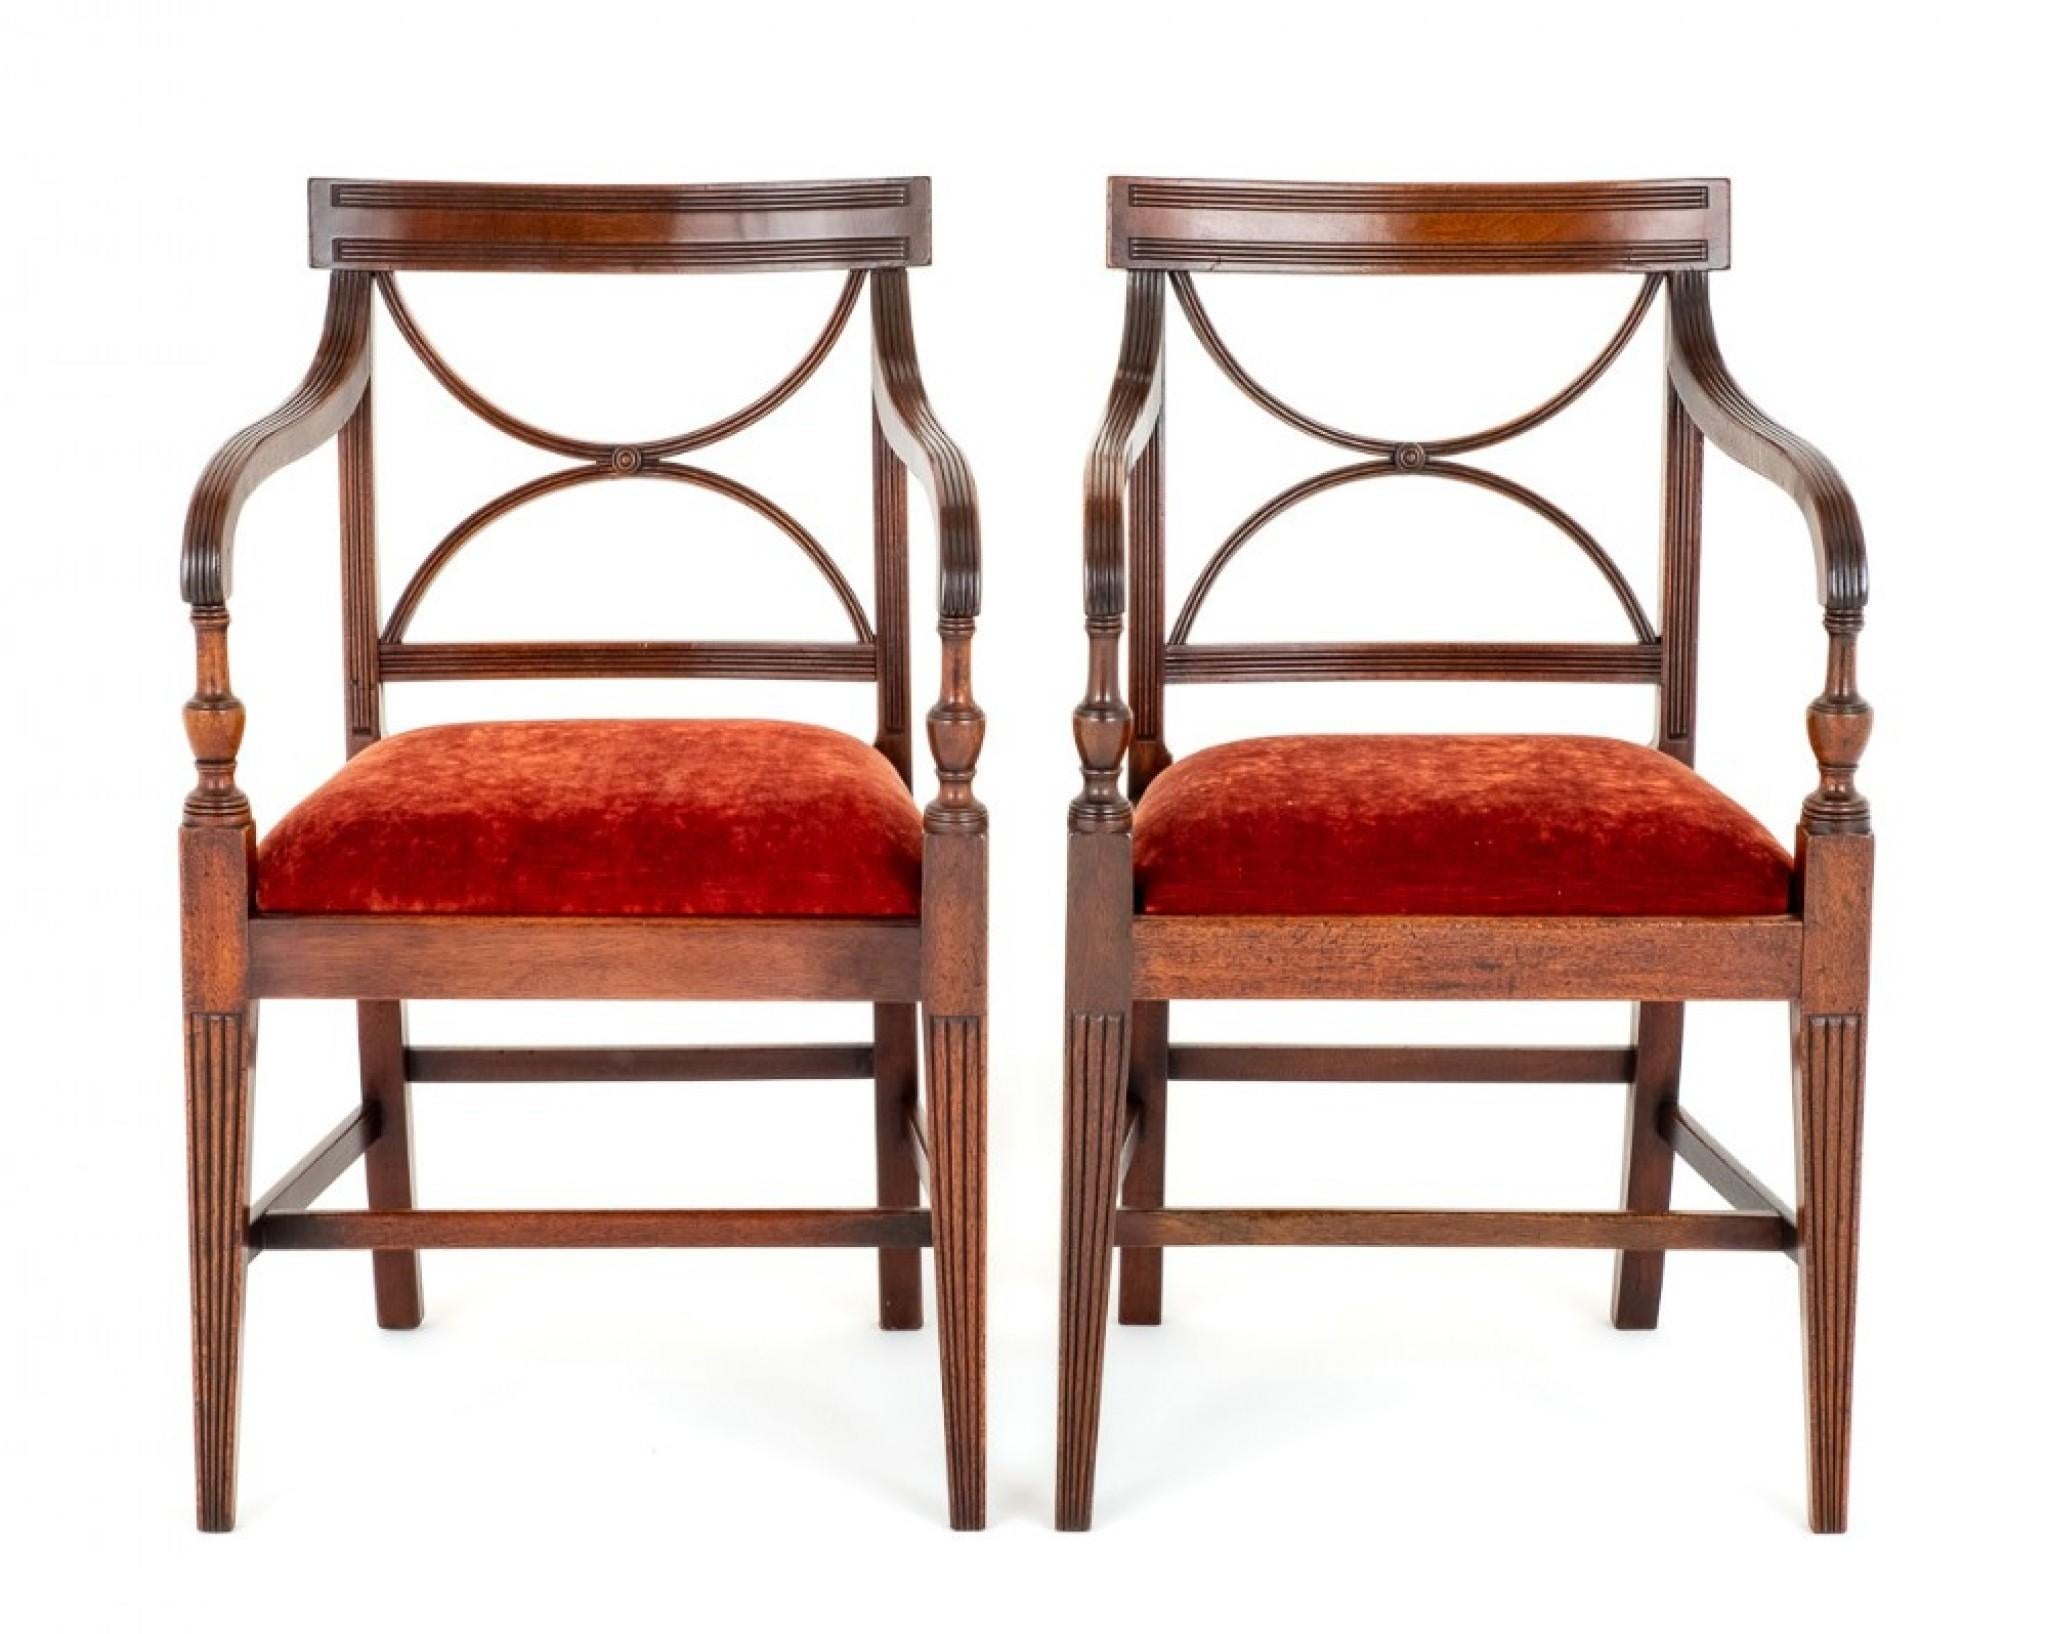 Ein Paar offene Mahagoni-Regency-Sessel.
Regentenzeit
Diese Stühle stehen auf konischen Beinen, die vorderen Beine haben geriffelte Verzierungen.
Die Stühle haben einen 